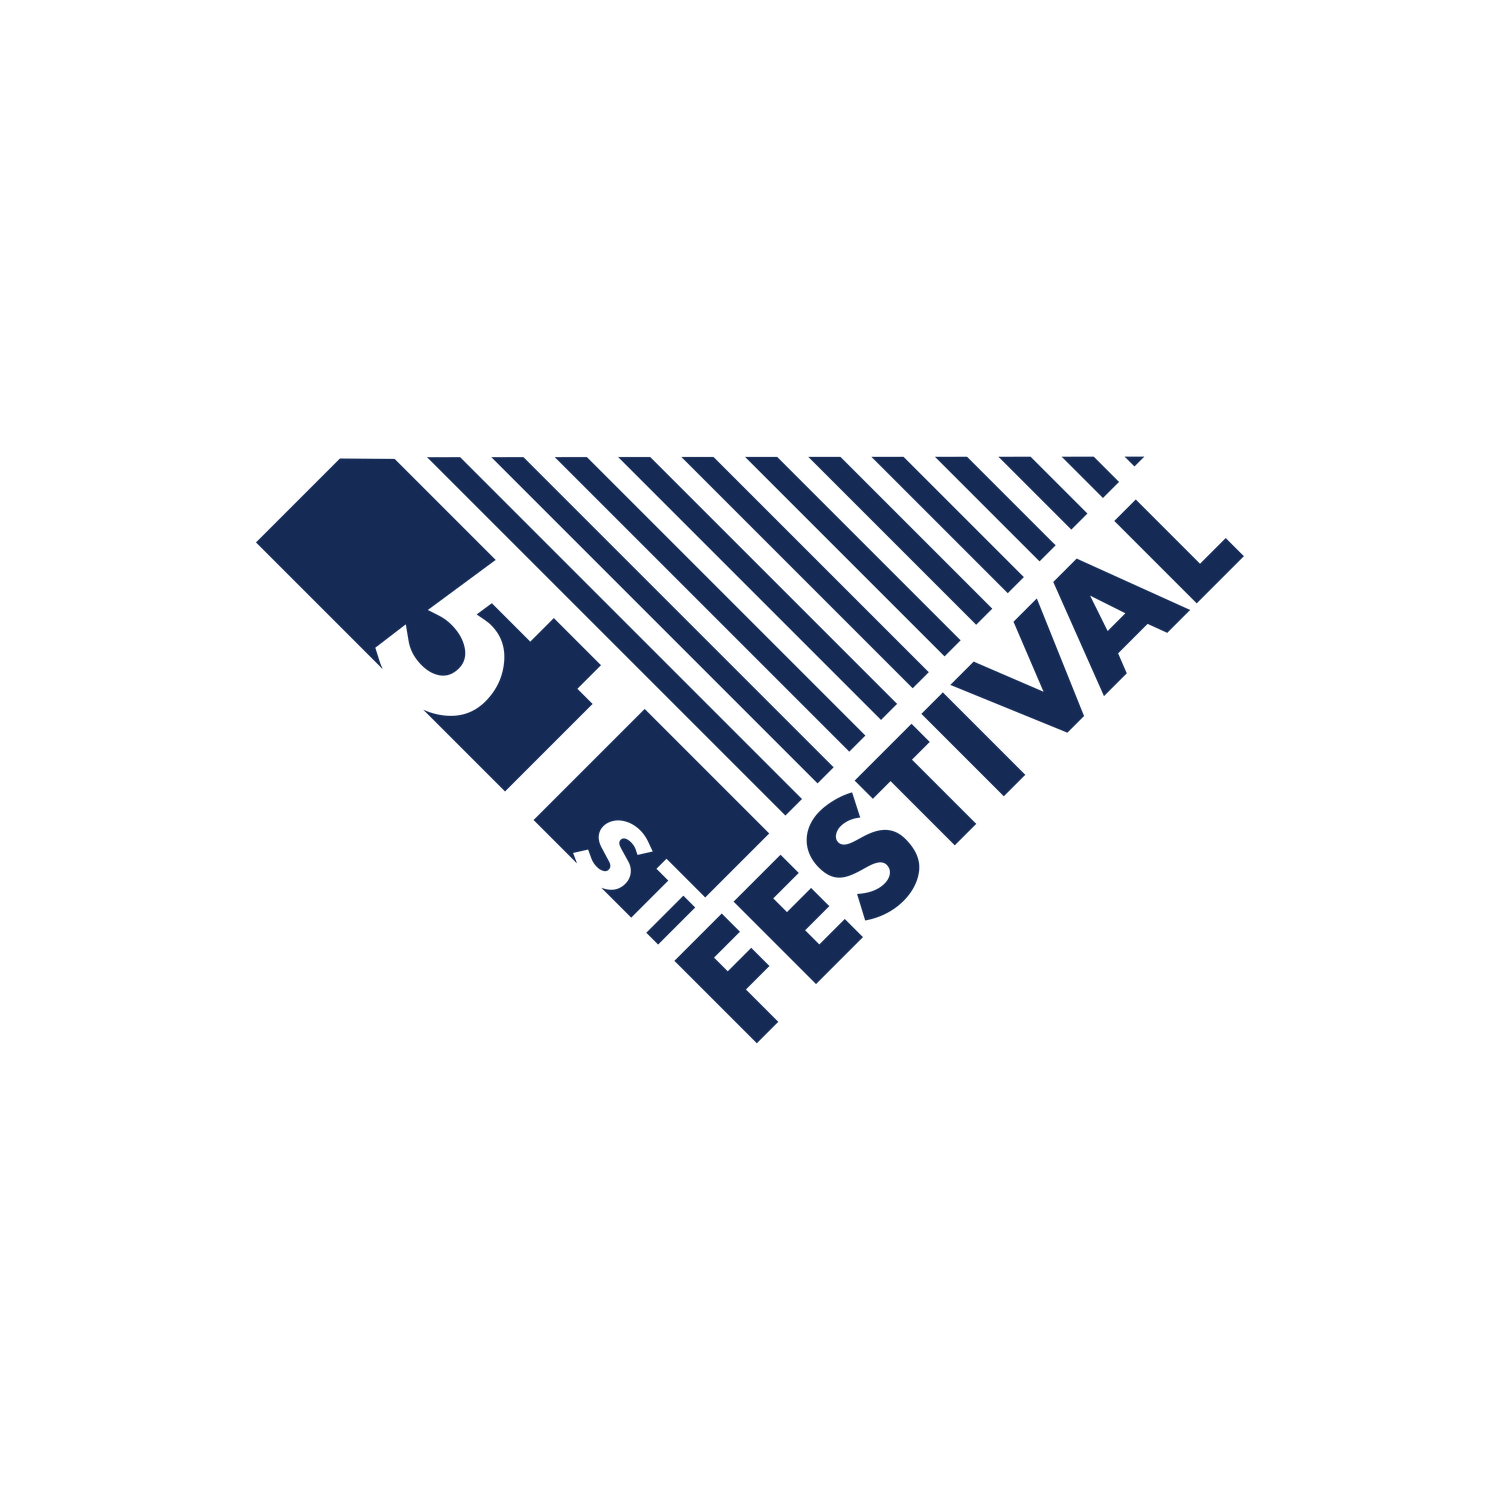 51st Festival